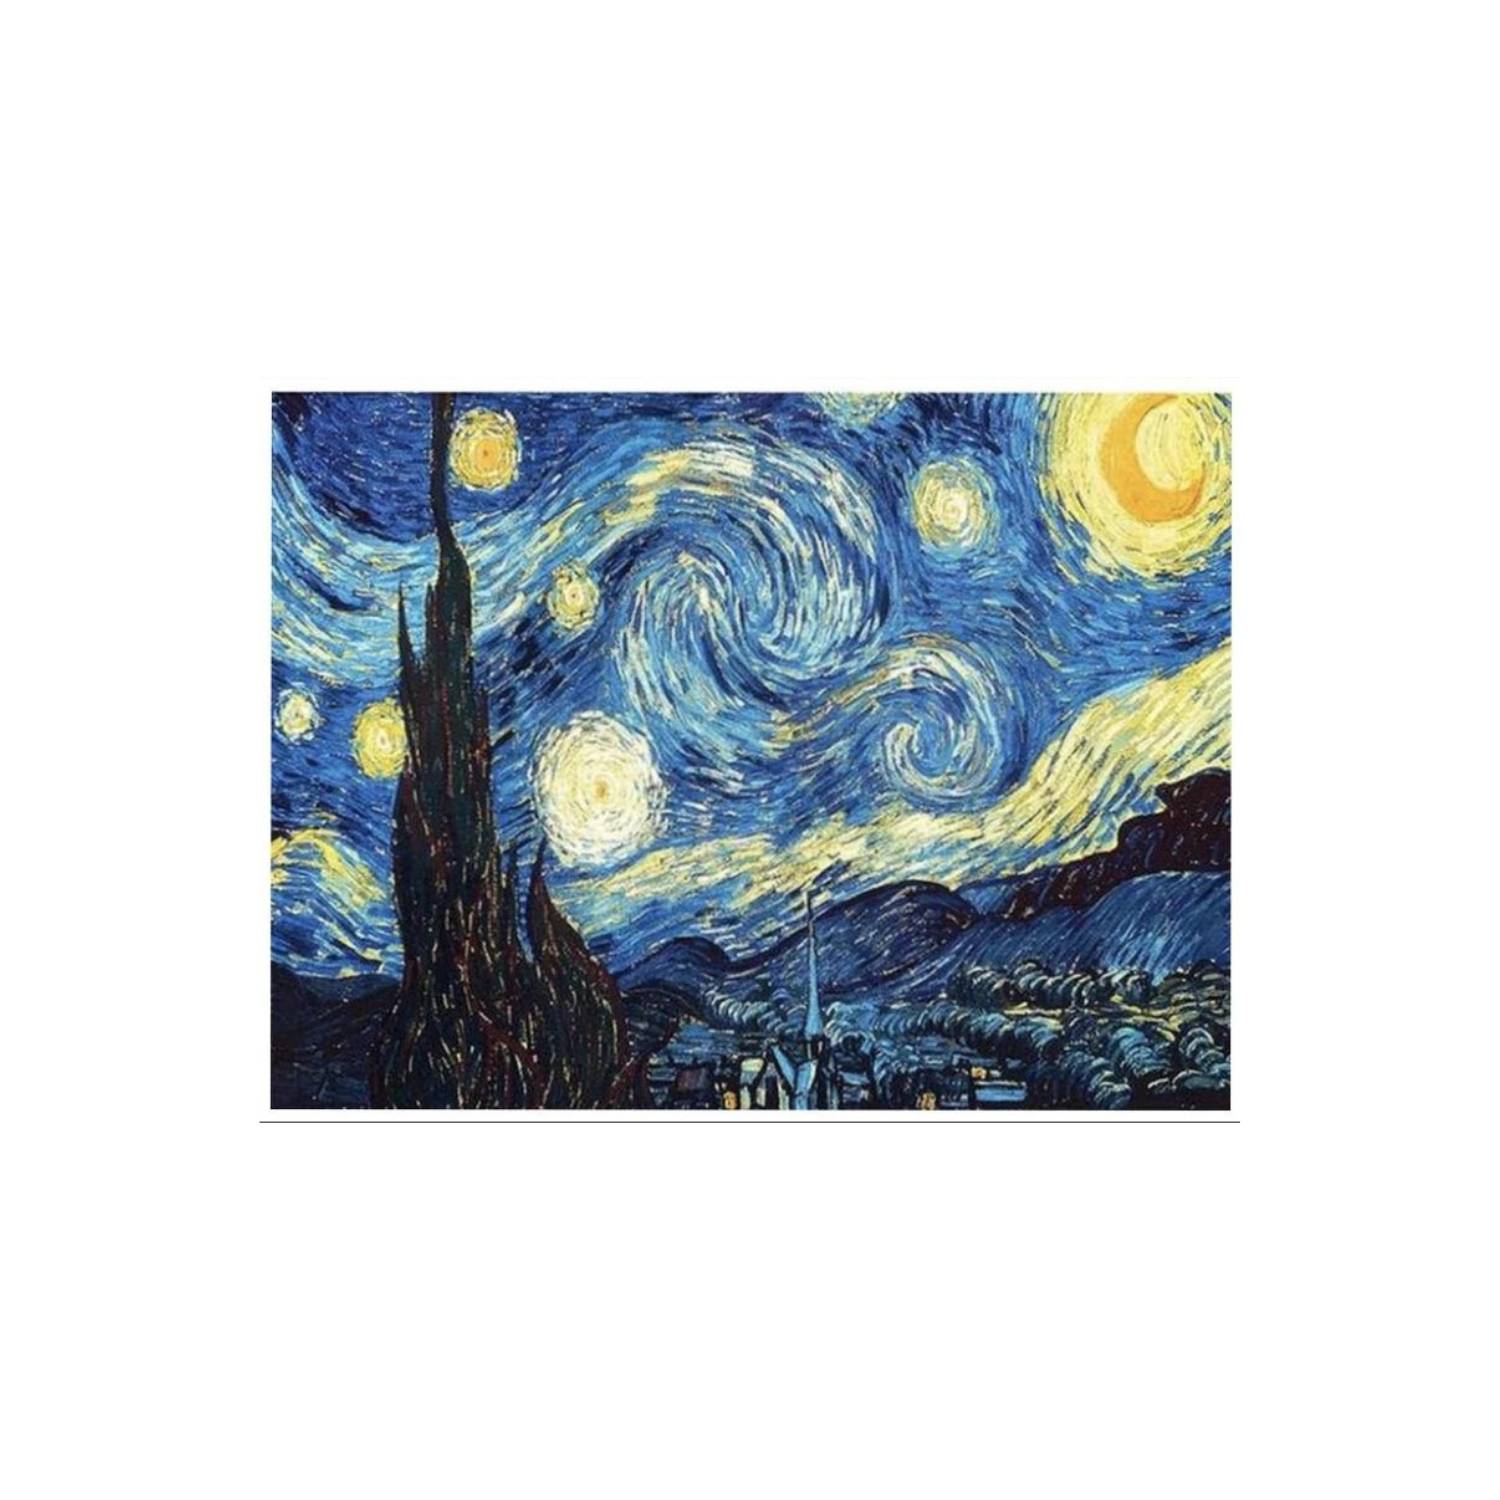 Kit de pintar por números de Van Gogh  Comprar lienzo por números – Canvas  by Numbers